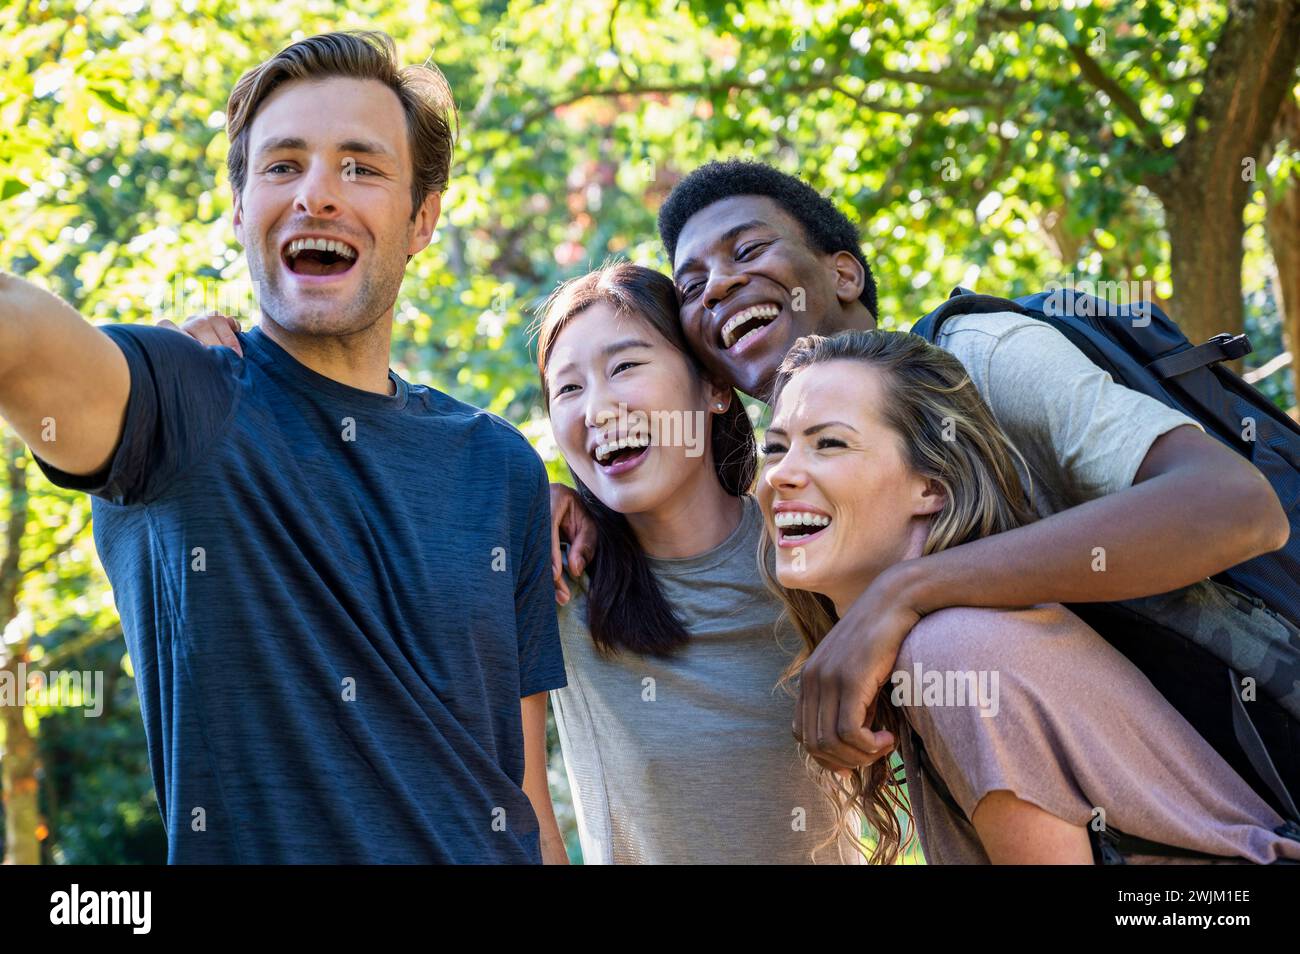 Jeune homme adulte prenant un selfie avec des amis pendant l'excursion de randonnée Banque D'Images